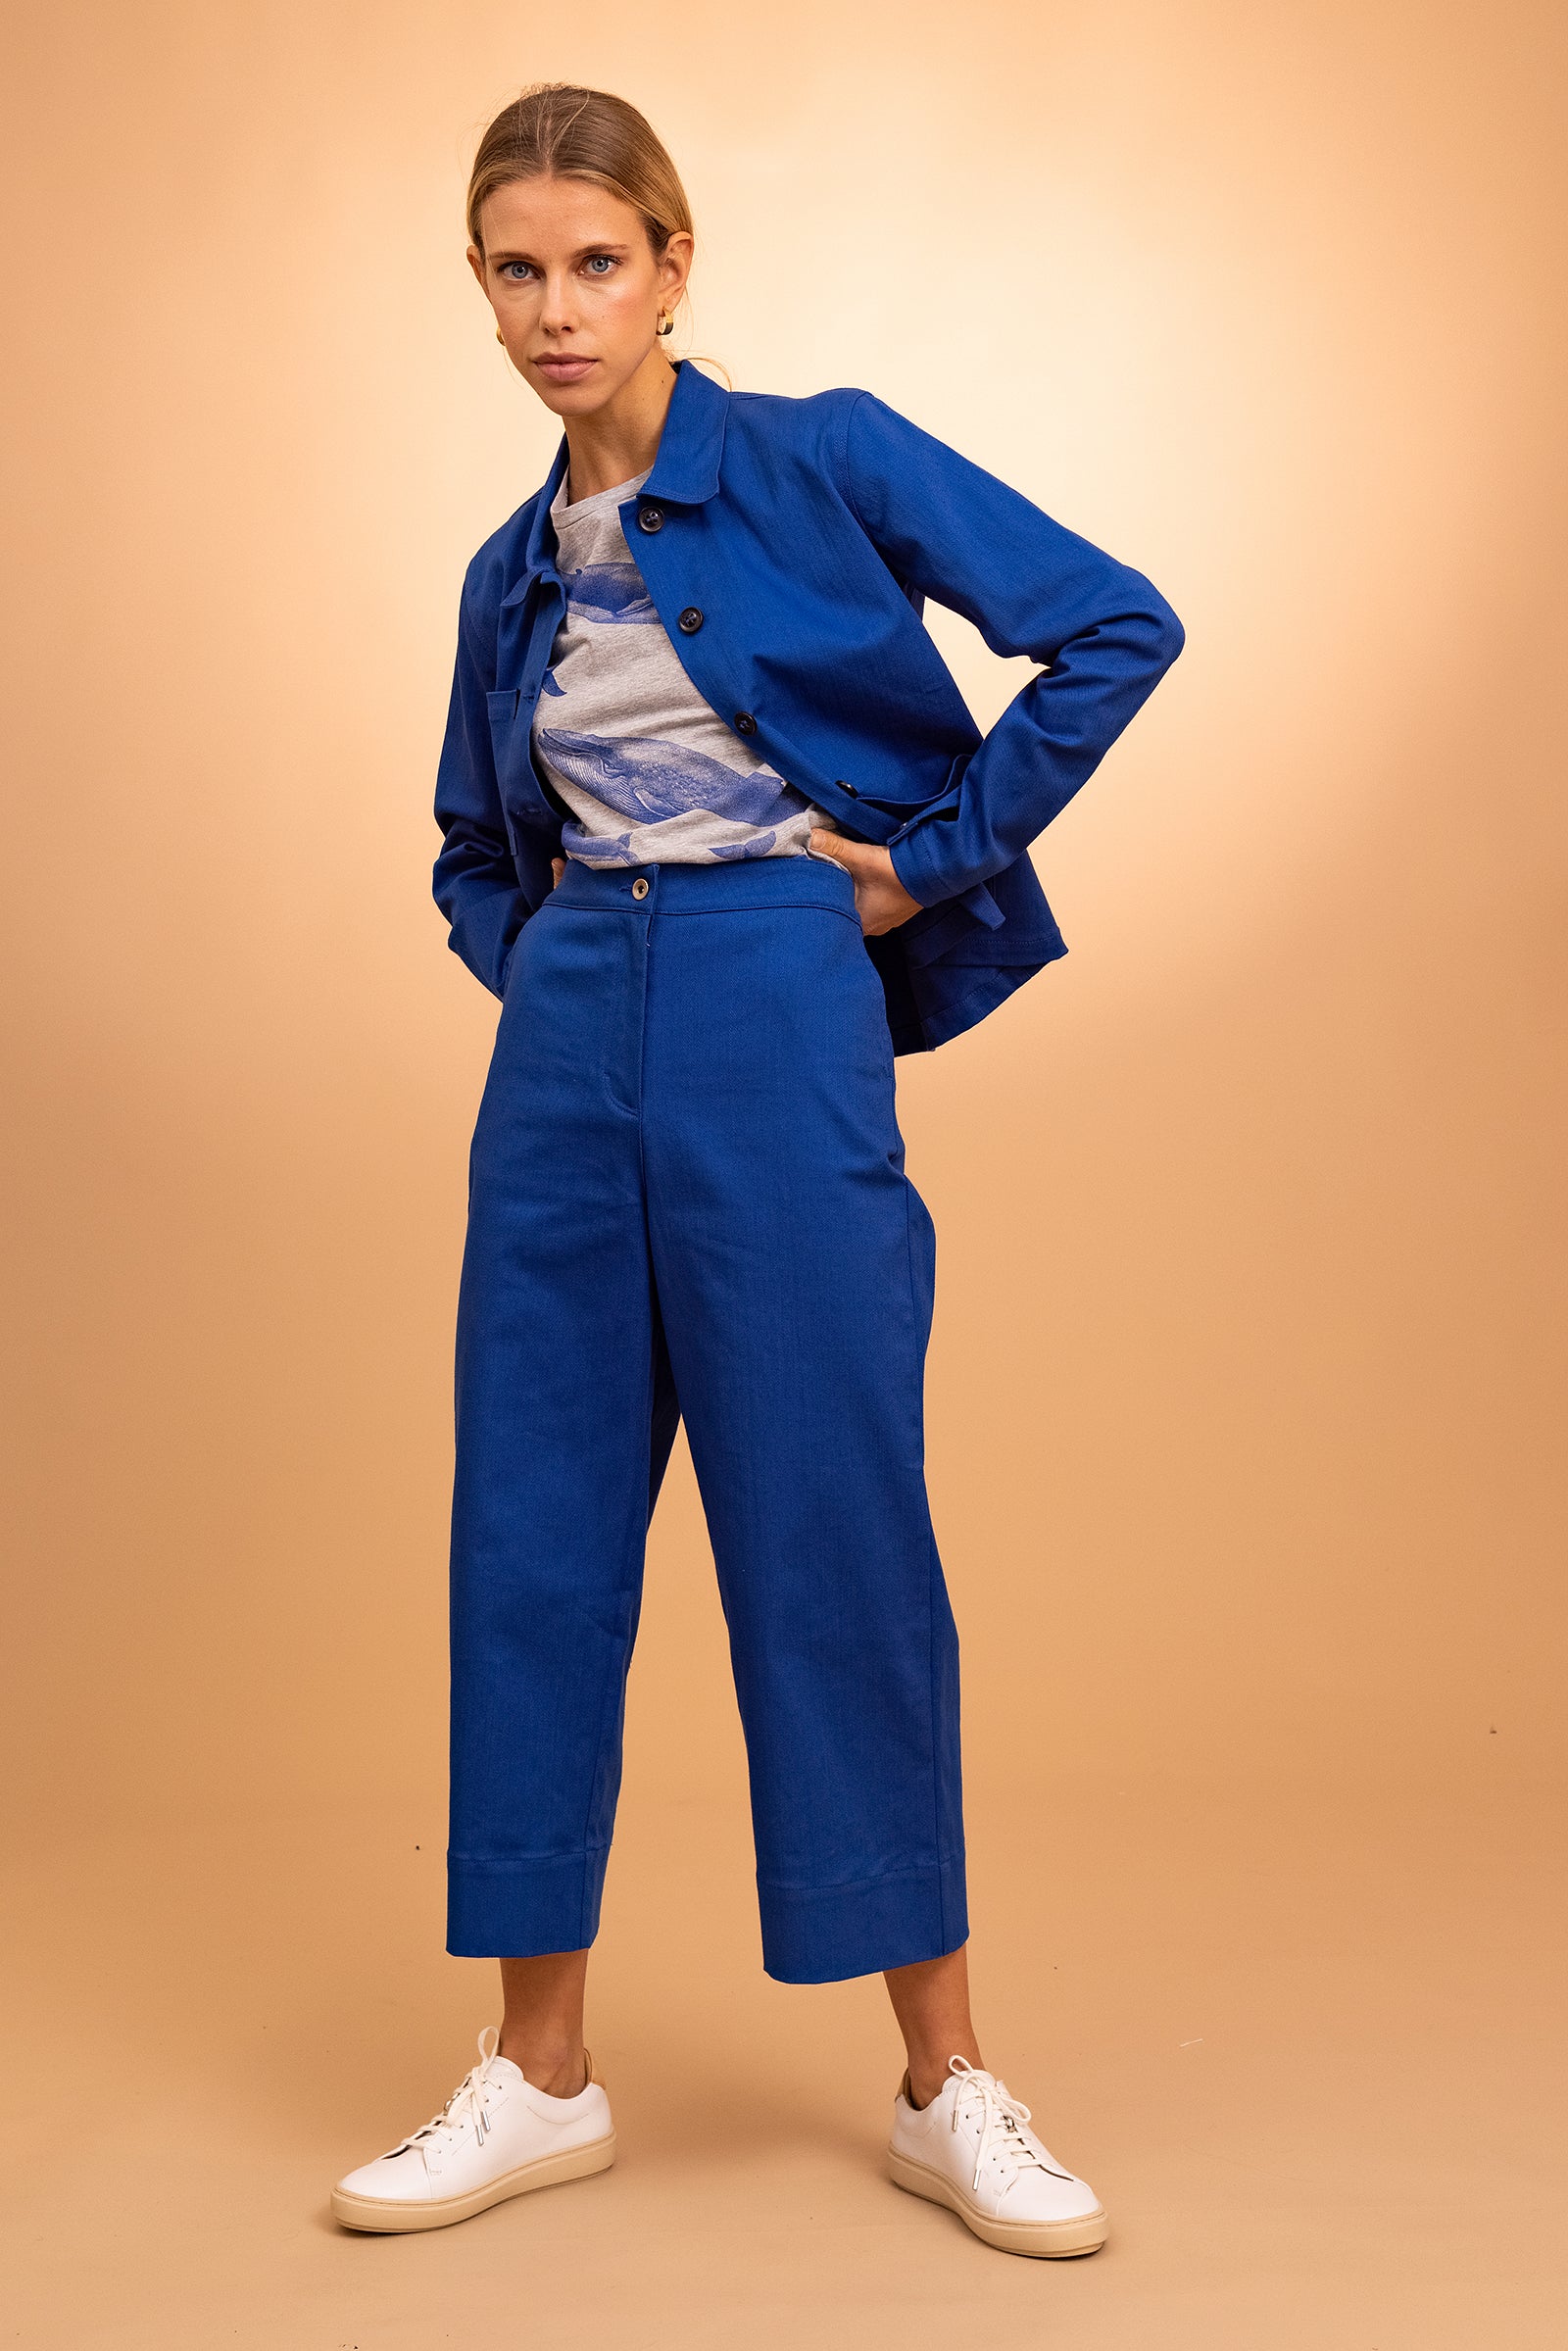 femme portant veste bleu de travail boutonnée en coton cristobal élégance féminité design allure style confort coupe droite  coton